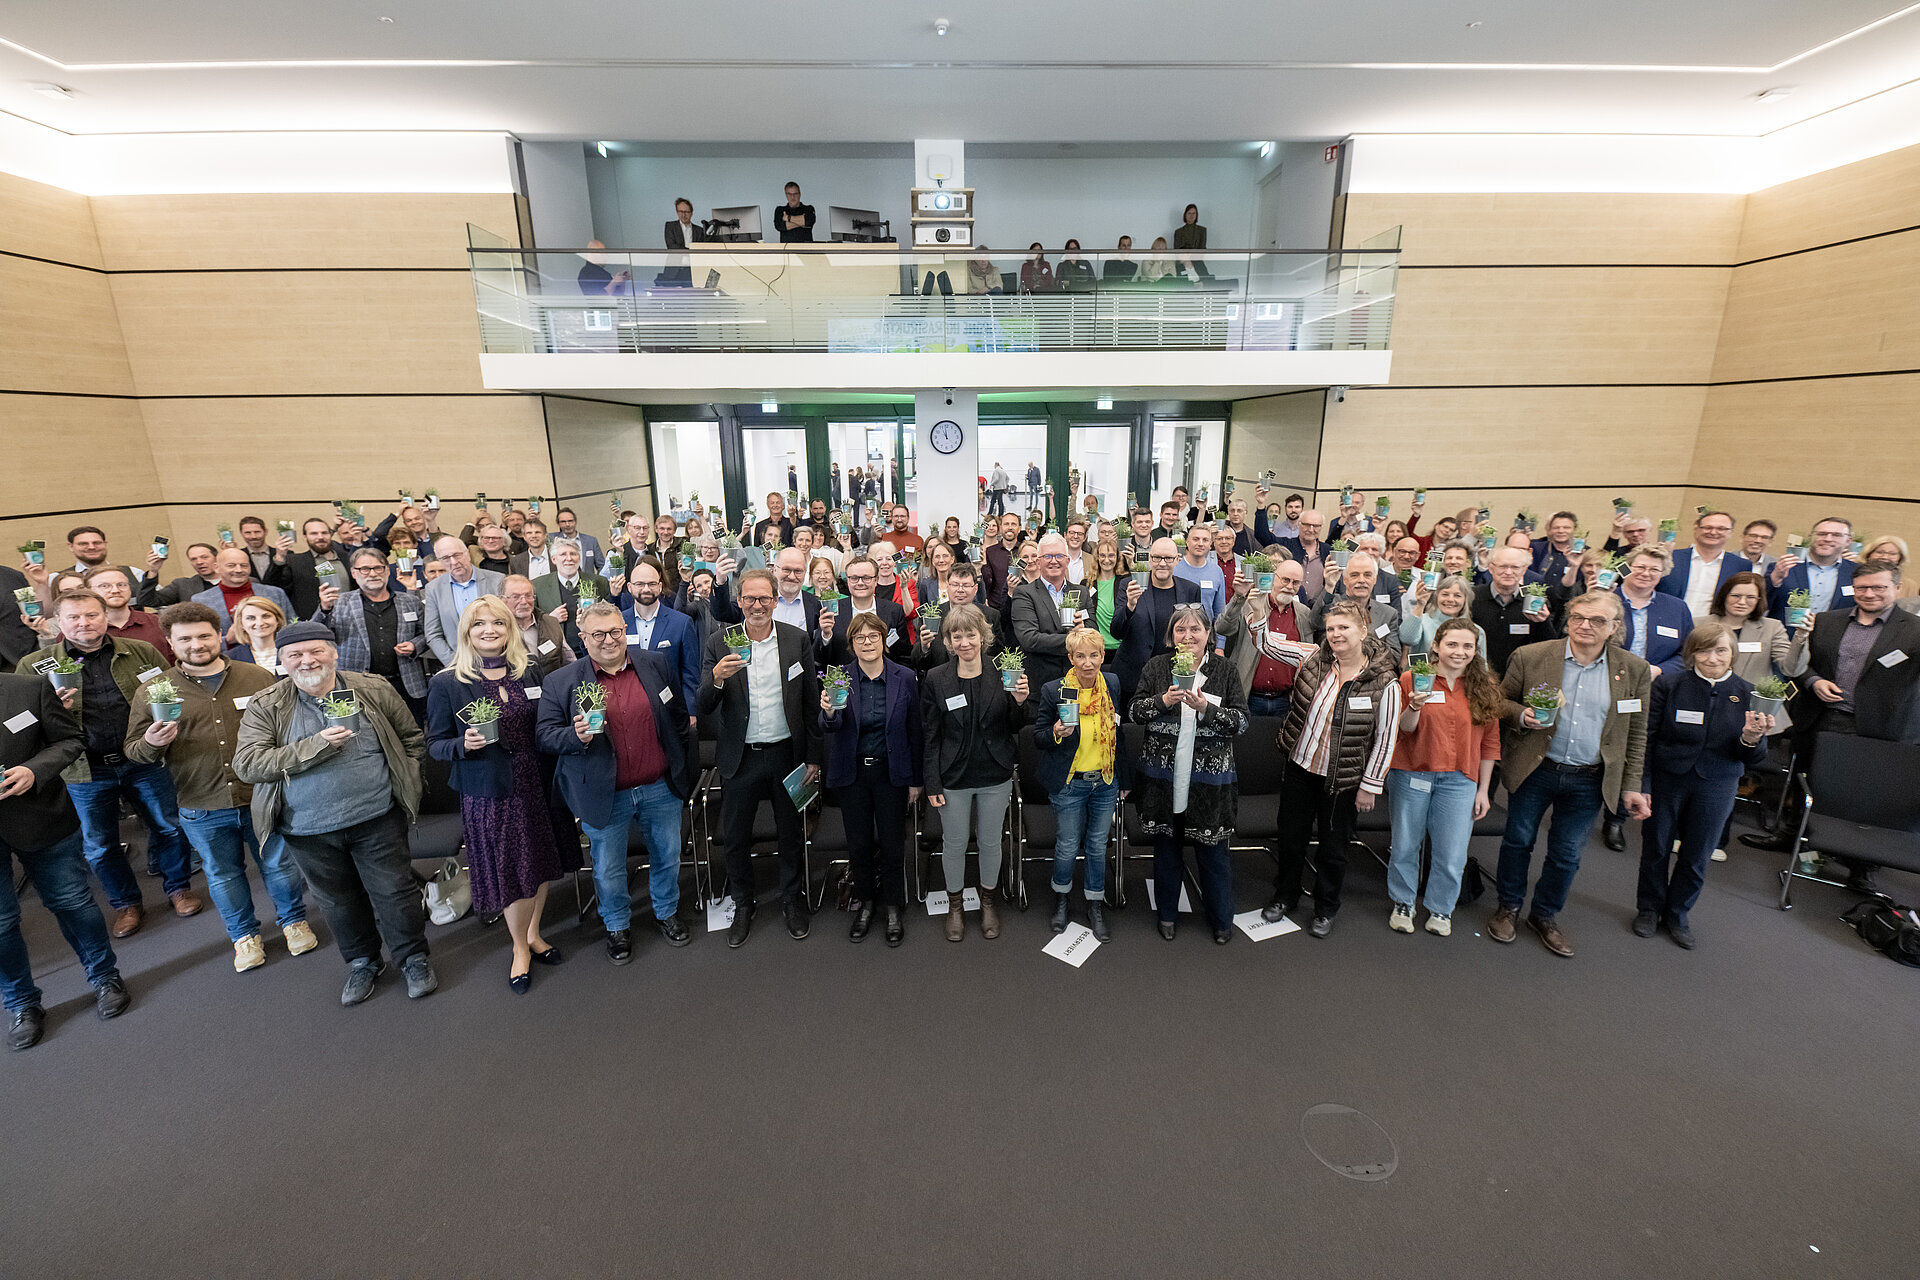 Gruppenbild aller Teilnehmenden im Plenarsaal mit Kräutertöpfchen in der Hand